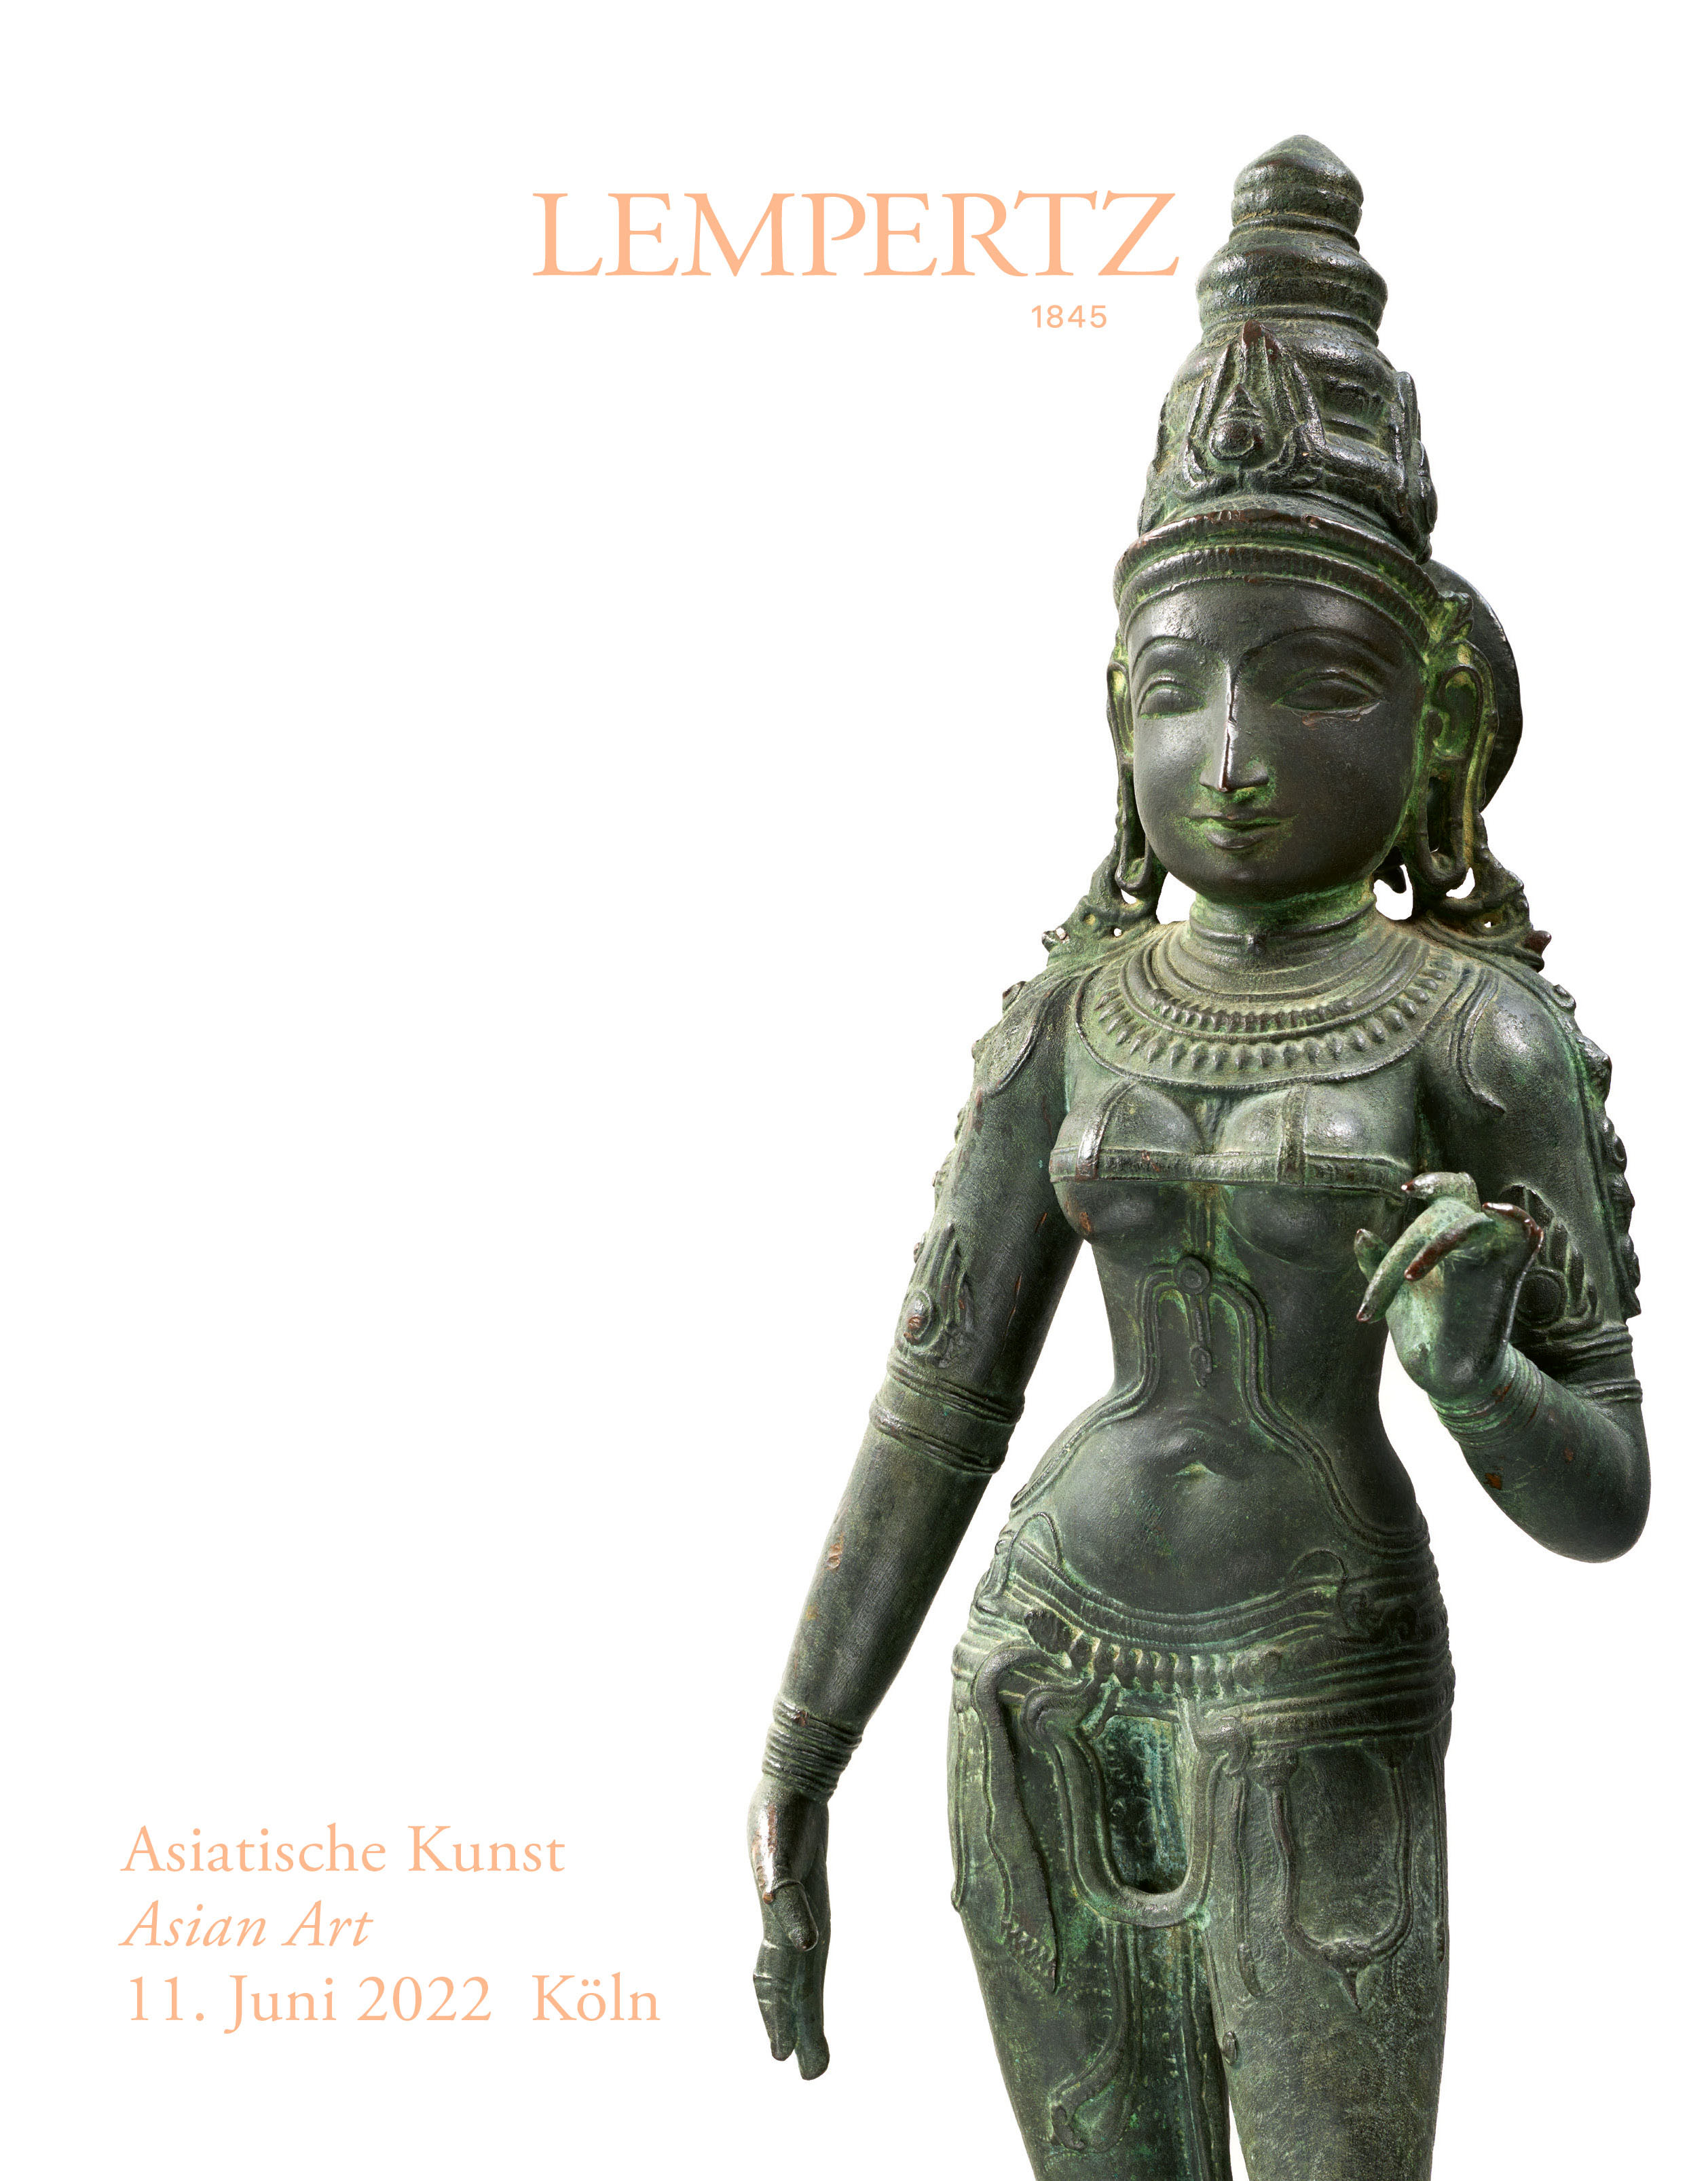 Auktionskatalog - Asiatische Kunst - Online Katalog - Auktion 1203 – Ersteigern Sie hochwertige Kunst in der nächsten Lempertz-Auktion!